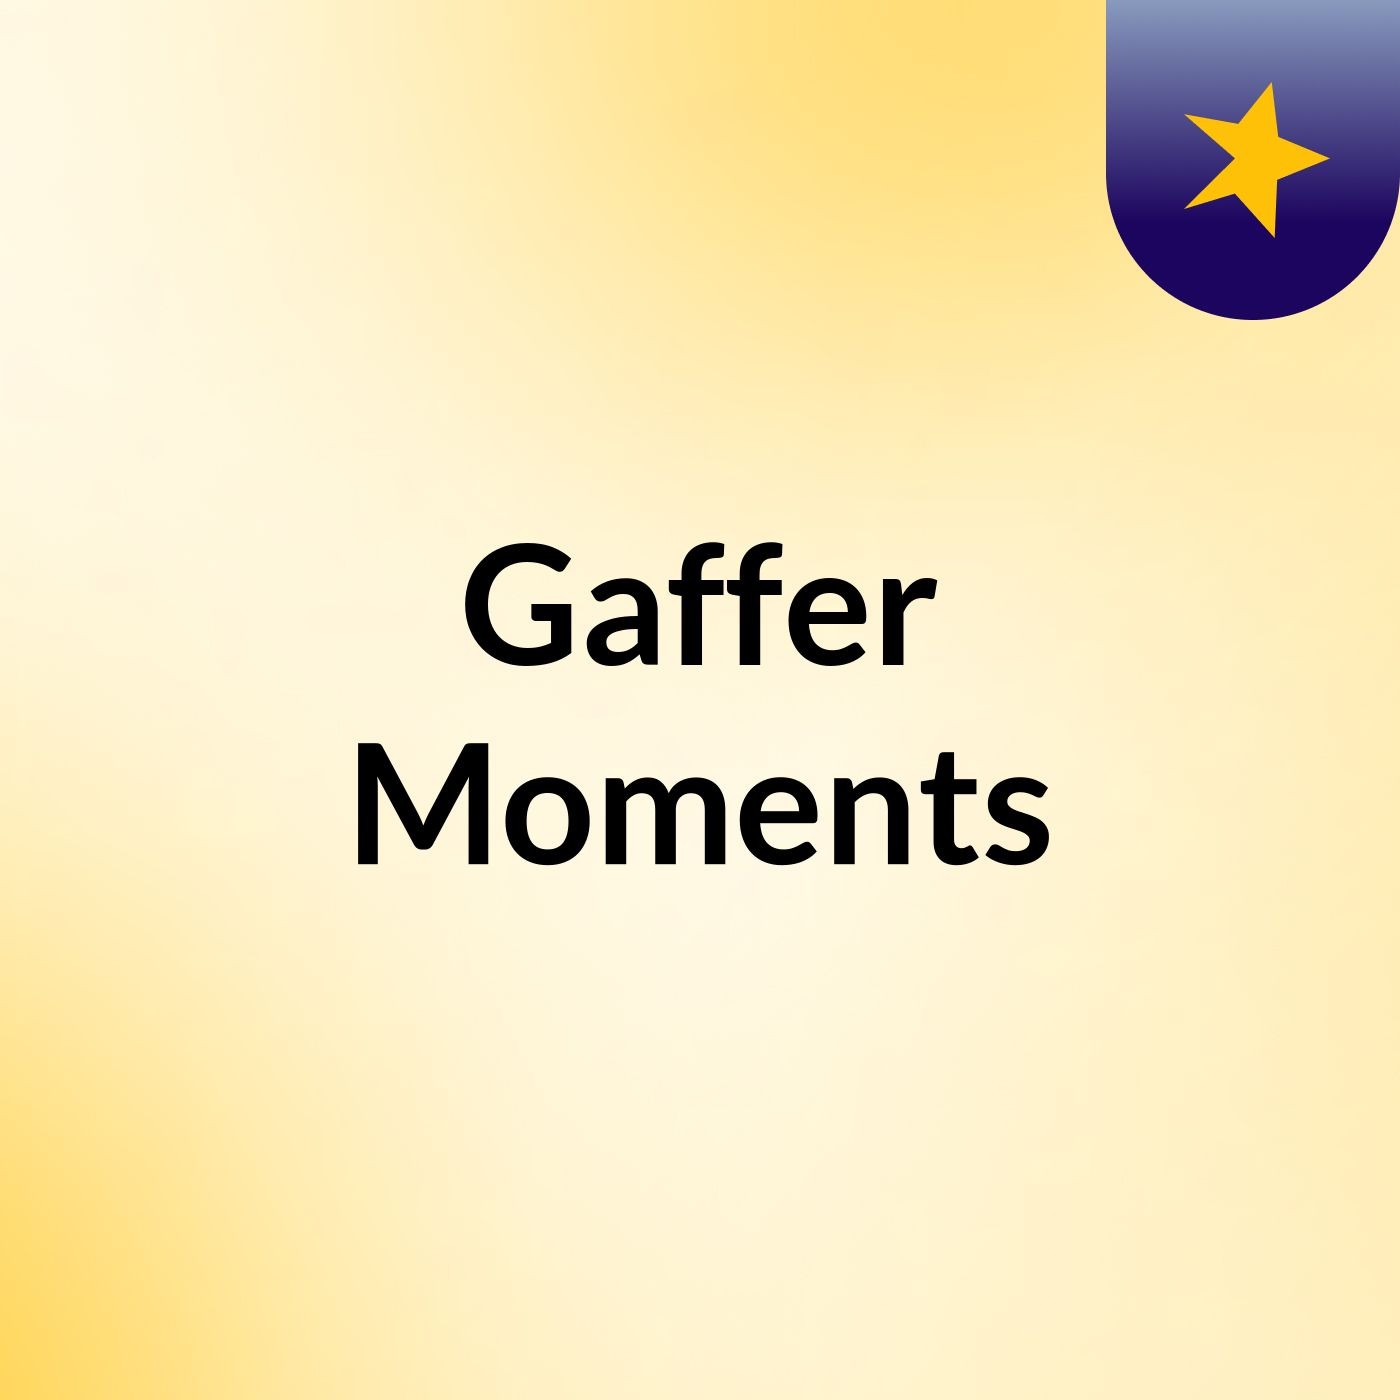 Episode 1 - Gaffer Moments